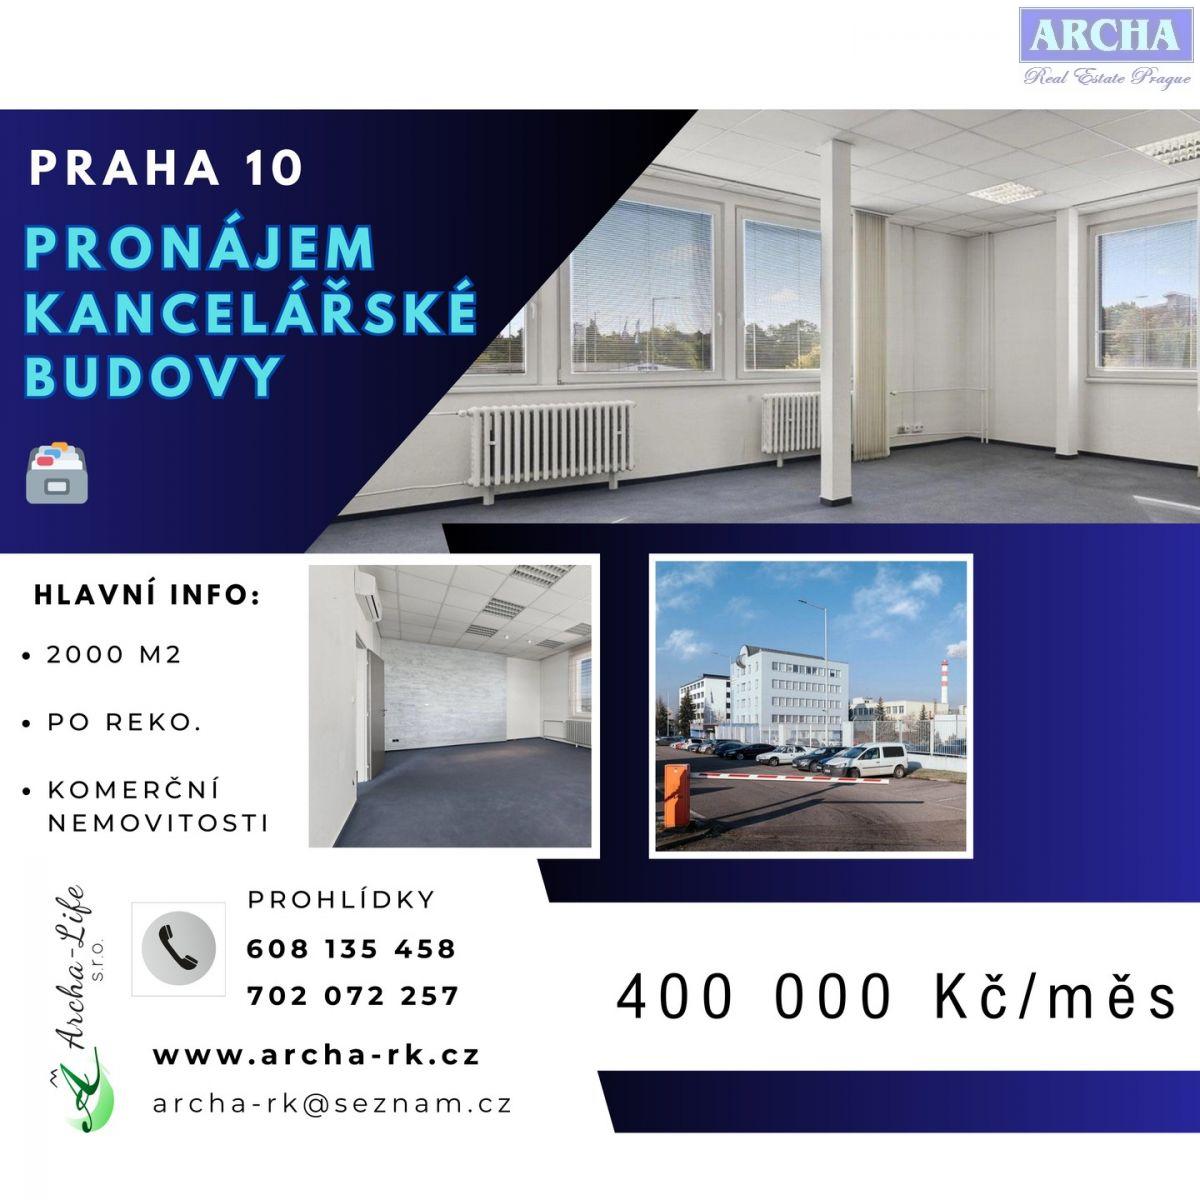 Pronájem kancelářské budovy, plocha 2000 m2, Praha 10